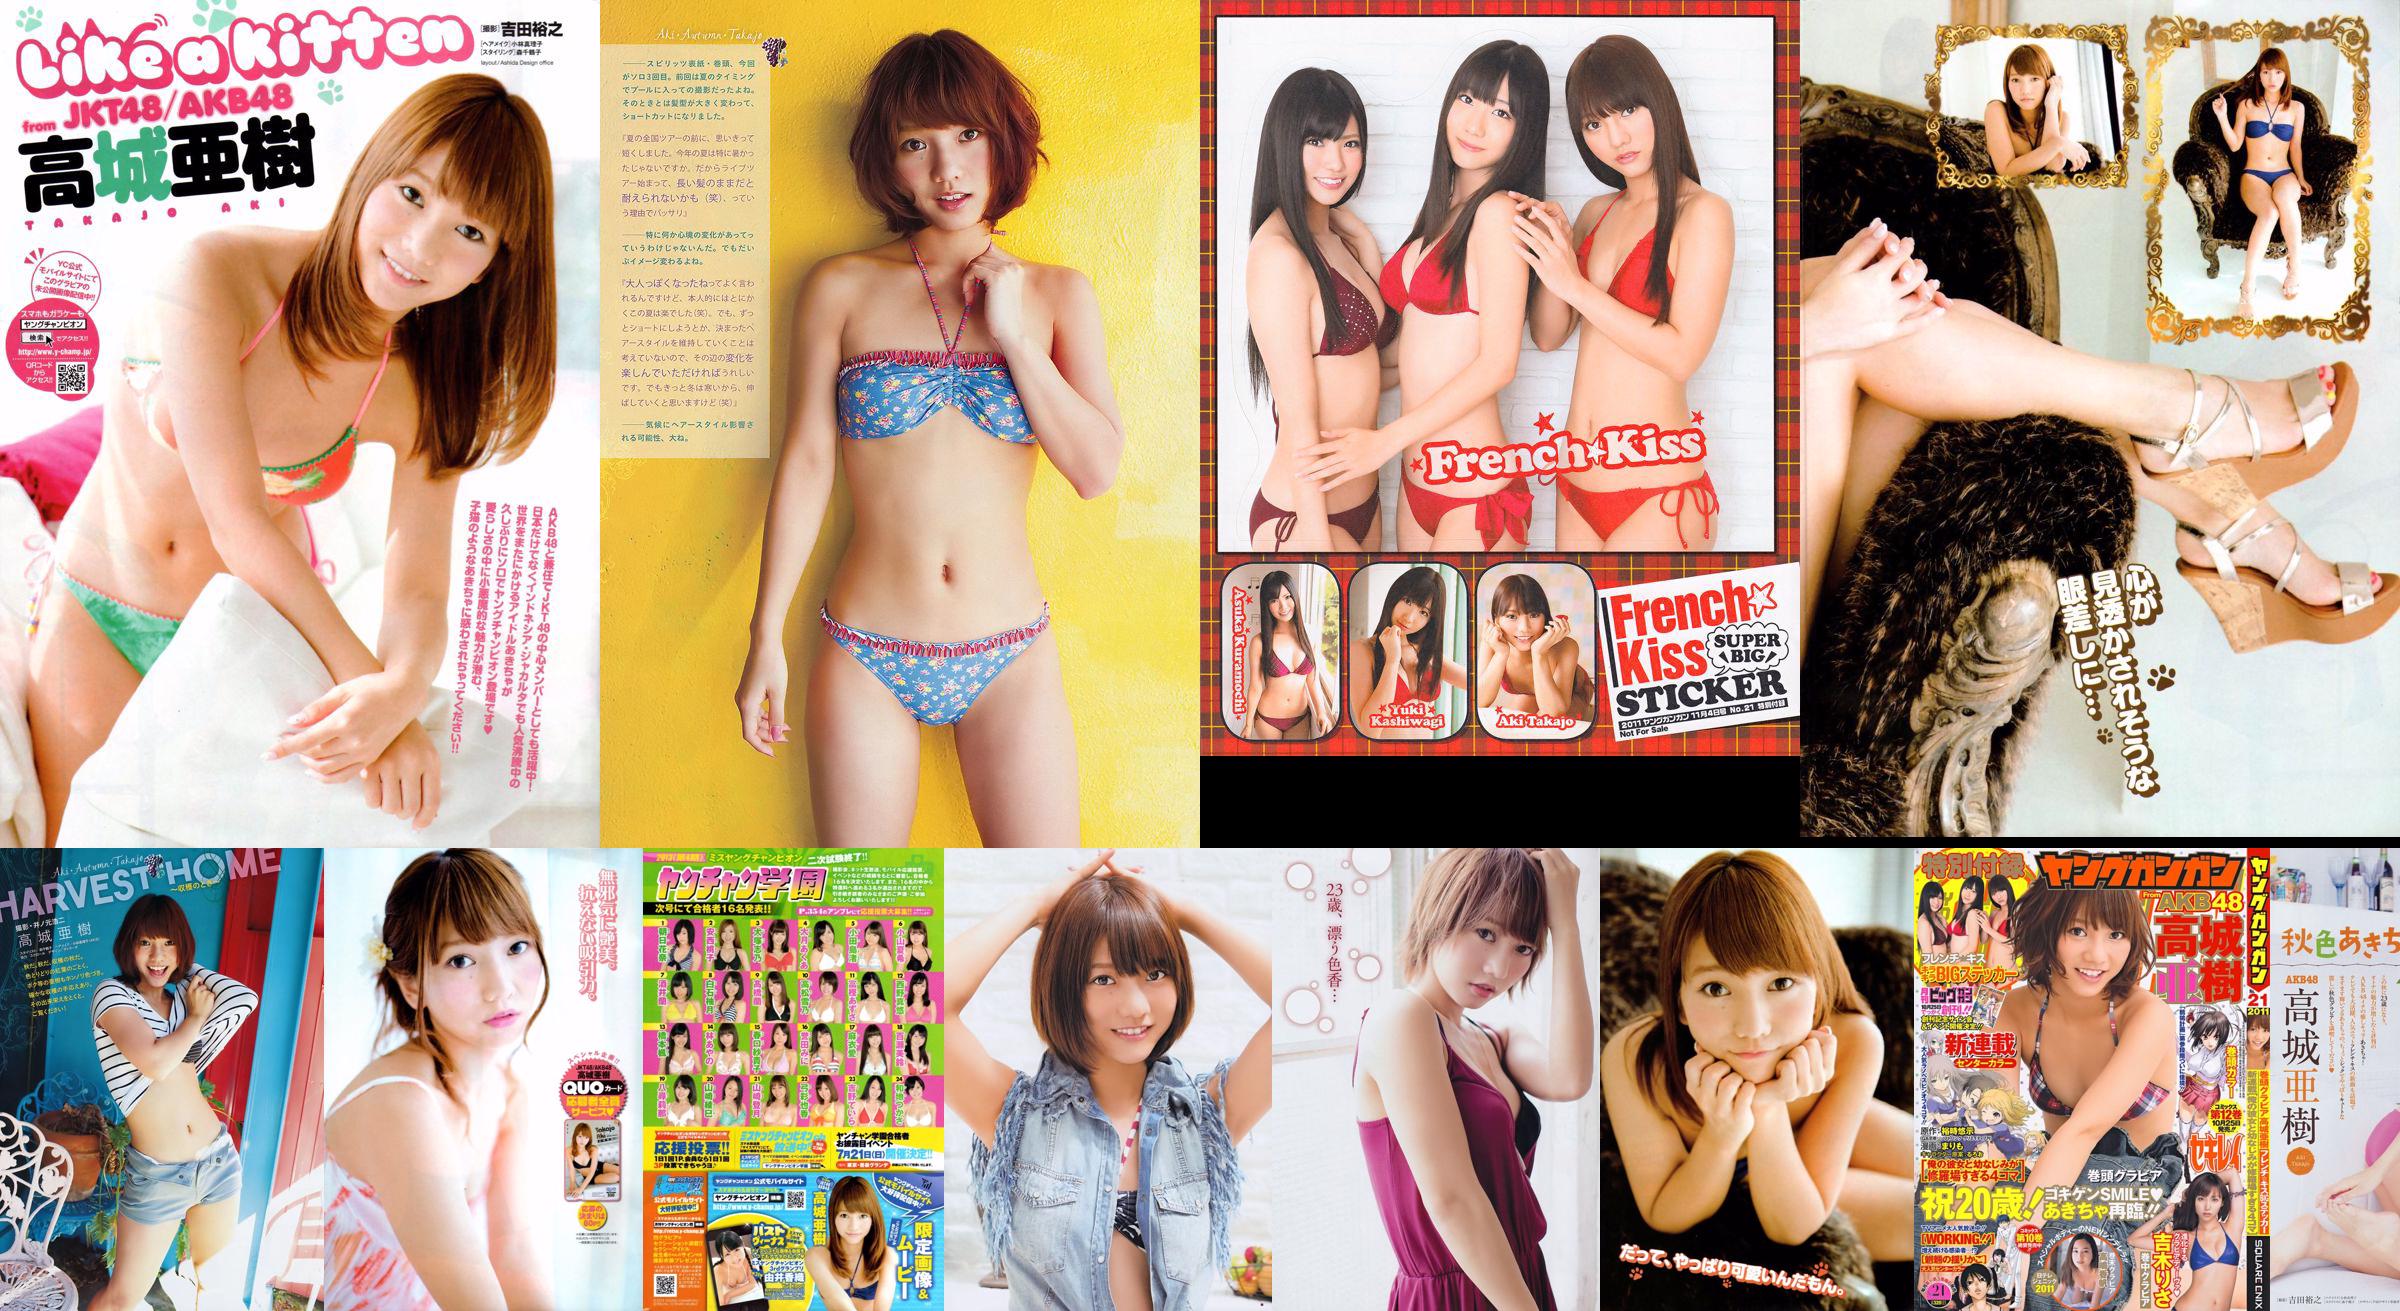 [Weekly Big Comic Spirits] นิตยสารภาพถ่าย Takajo Aki 2011 No.49 No.32d874 หน้า 4